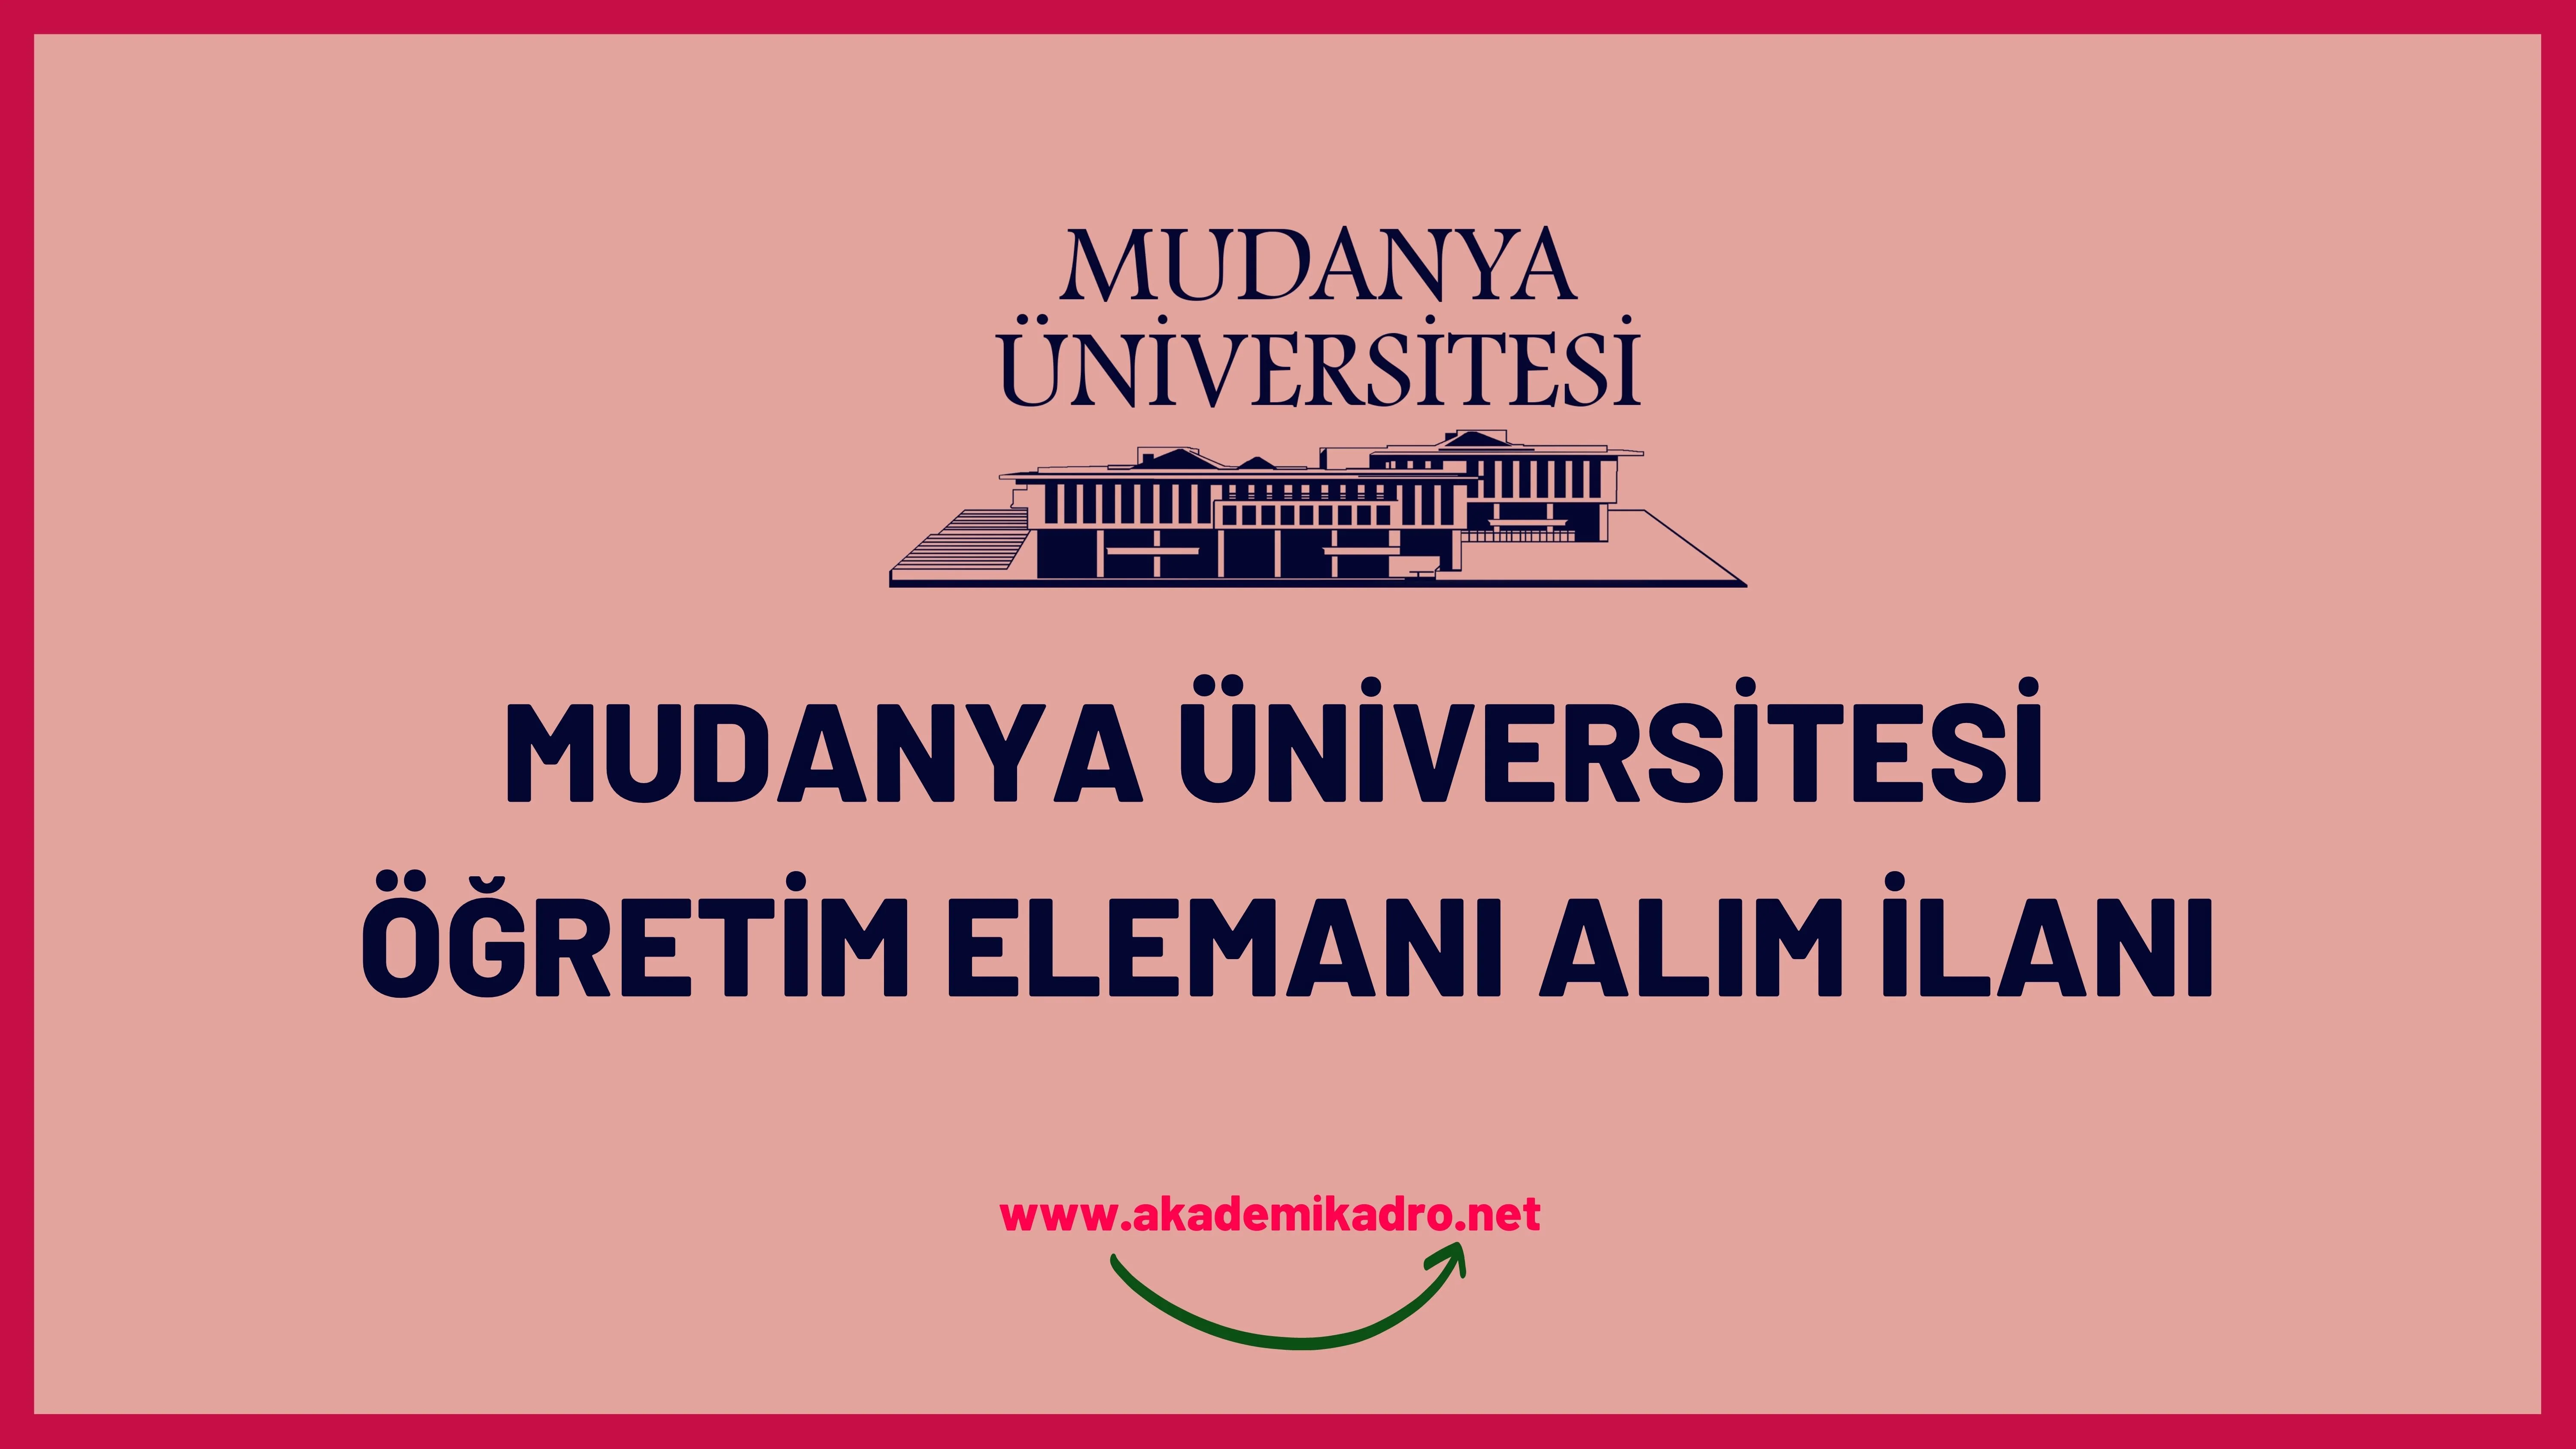 Mudanya Üniversitesi 4 Araştırma görevlisi, 2 öğretim görevlisi ve 8 öğretim üyesi alacaktır.